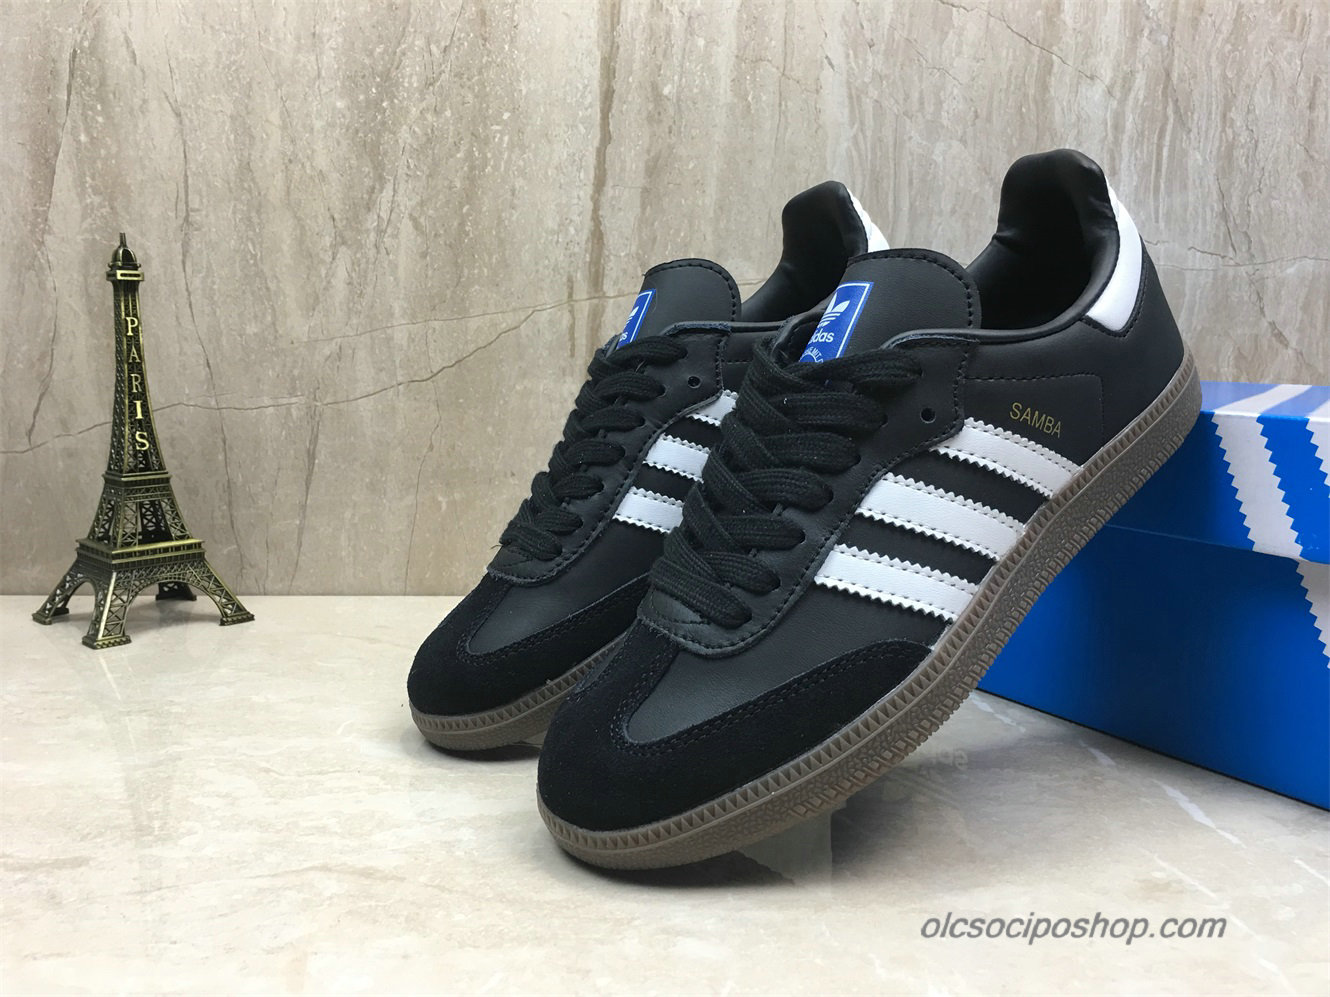 Adidas Samba OG Fekete/Fehér Cipők (B75807) - Kattintásra bezárul